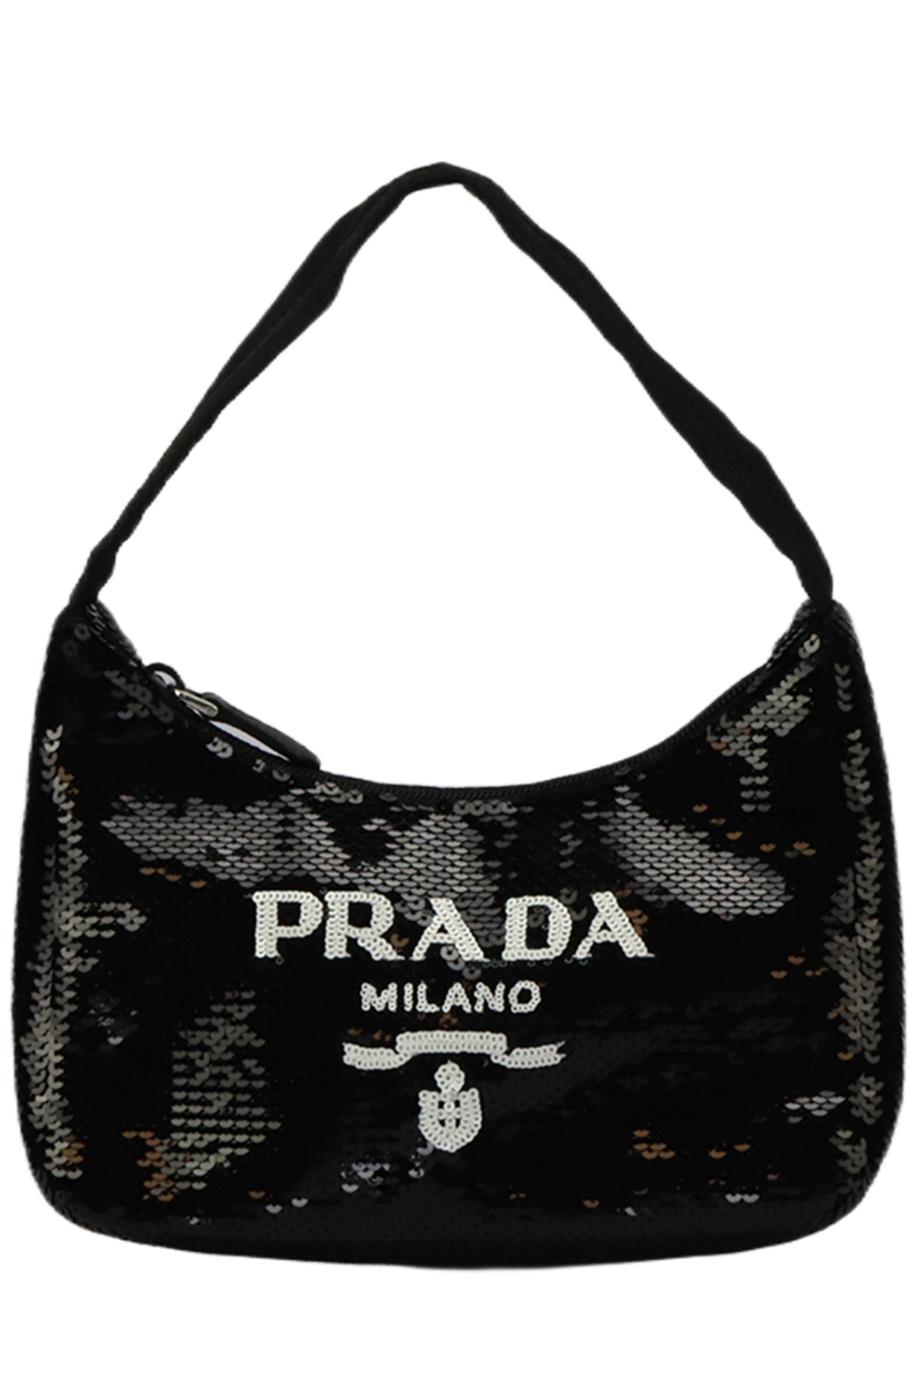 Prada Re-Edition 2000 Zip Shoulder Bag